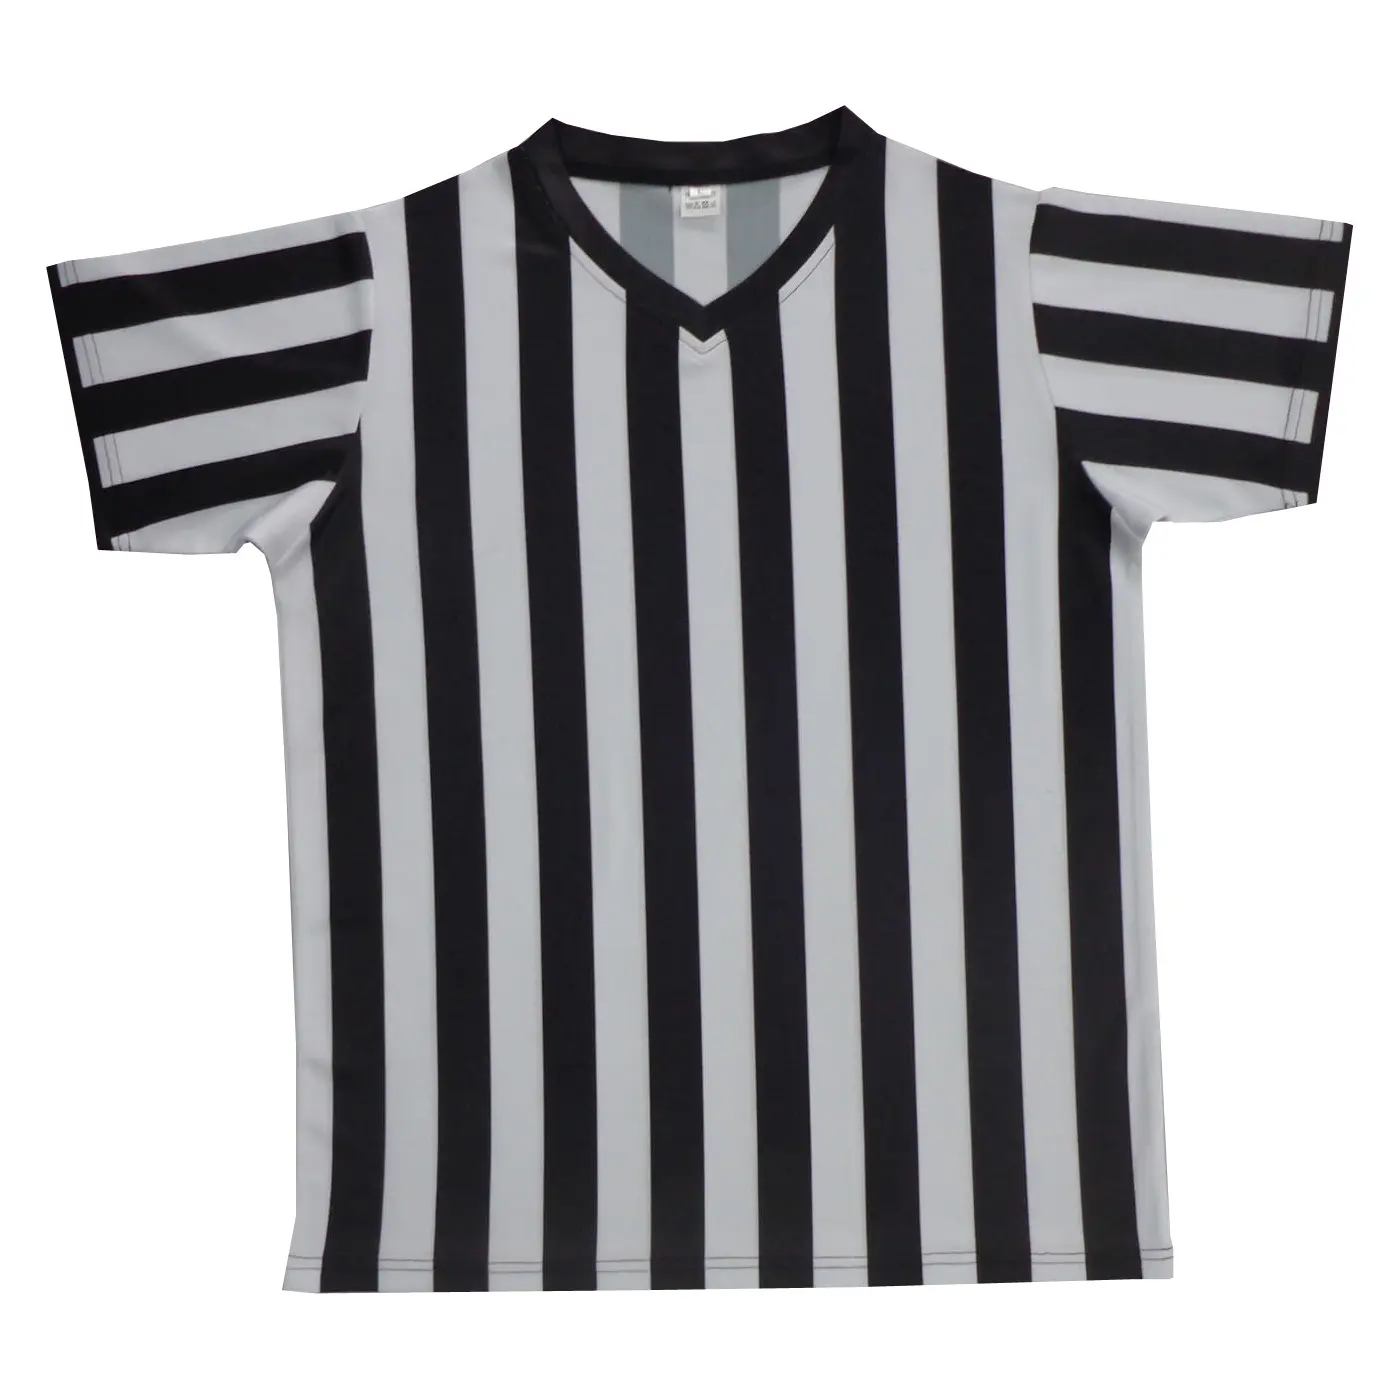 Gençlik takım kulübü erkekler için futbol kıyafetleri gömlek futbol formaları şerit süblimasyon özel takım giyim forması logoları ve numaraları ile